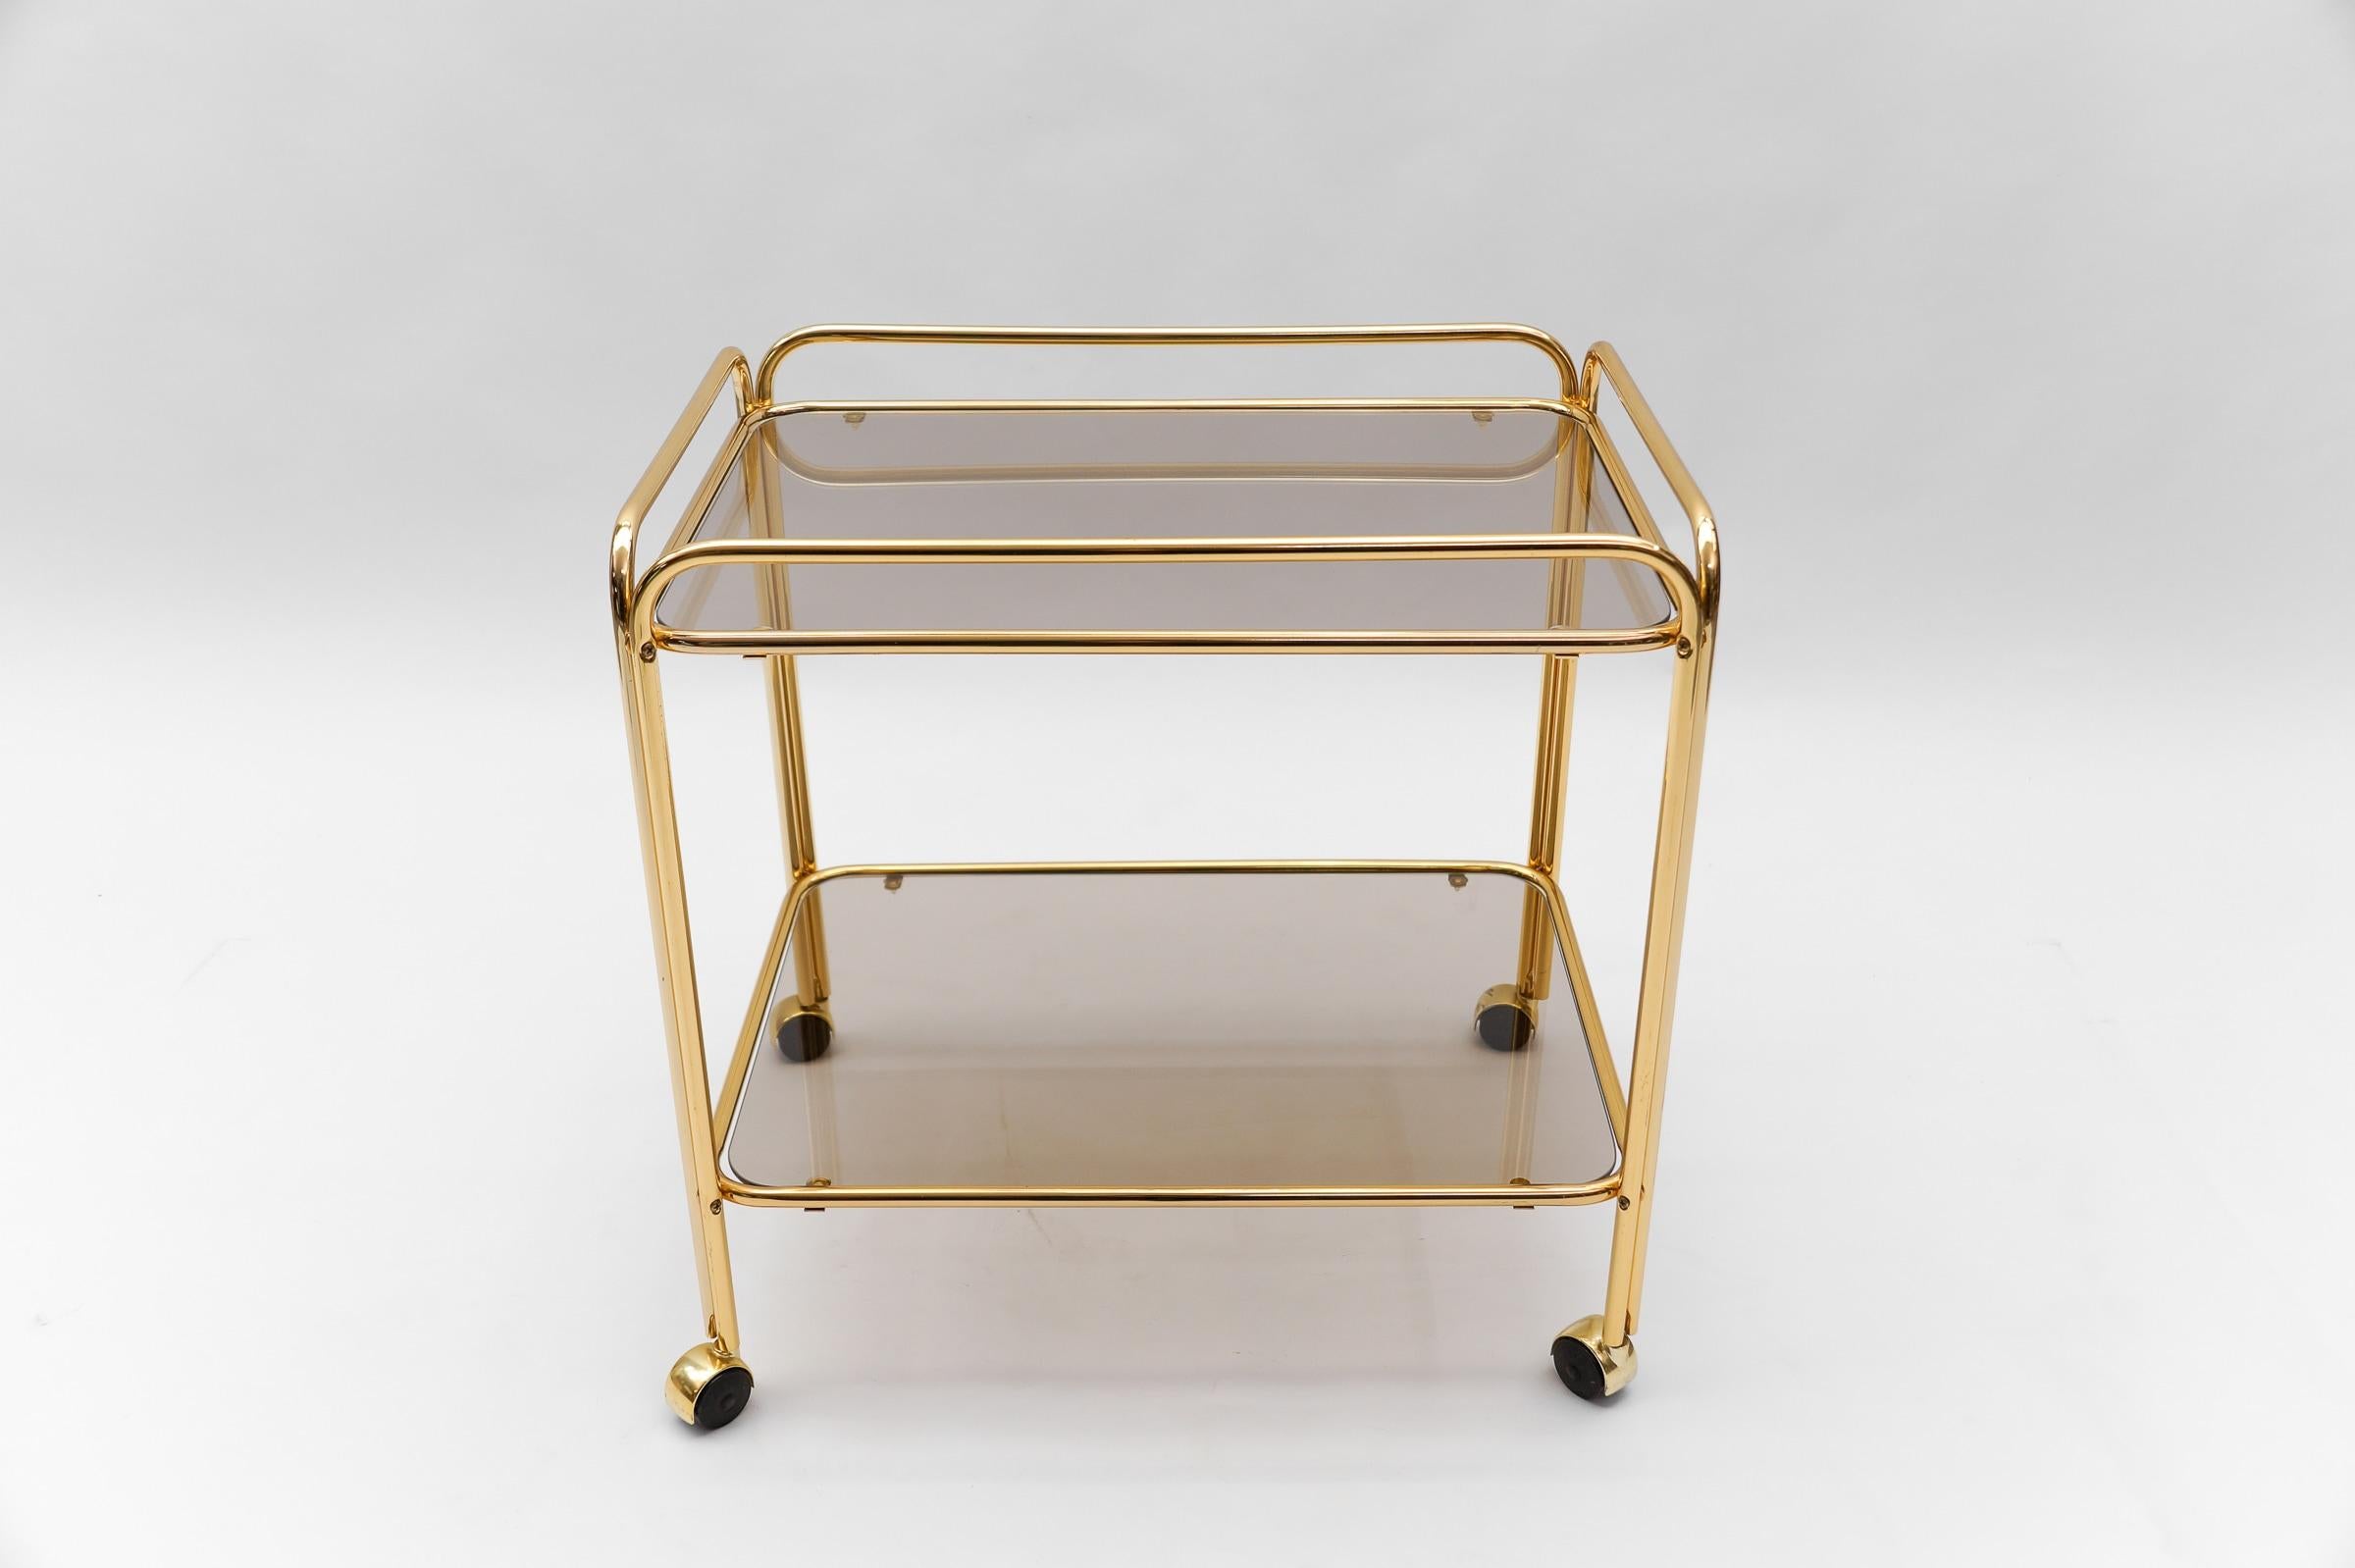  Lovely Elegant Mid-Century Modern Brass Bar Cart, 1960s, France For Sale 5